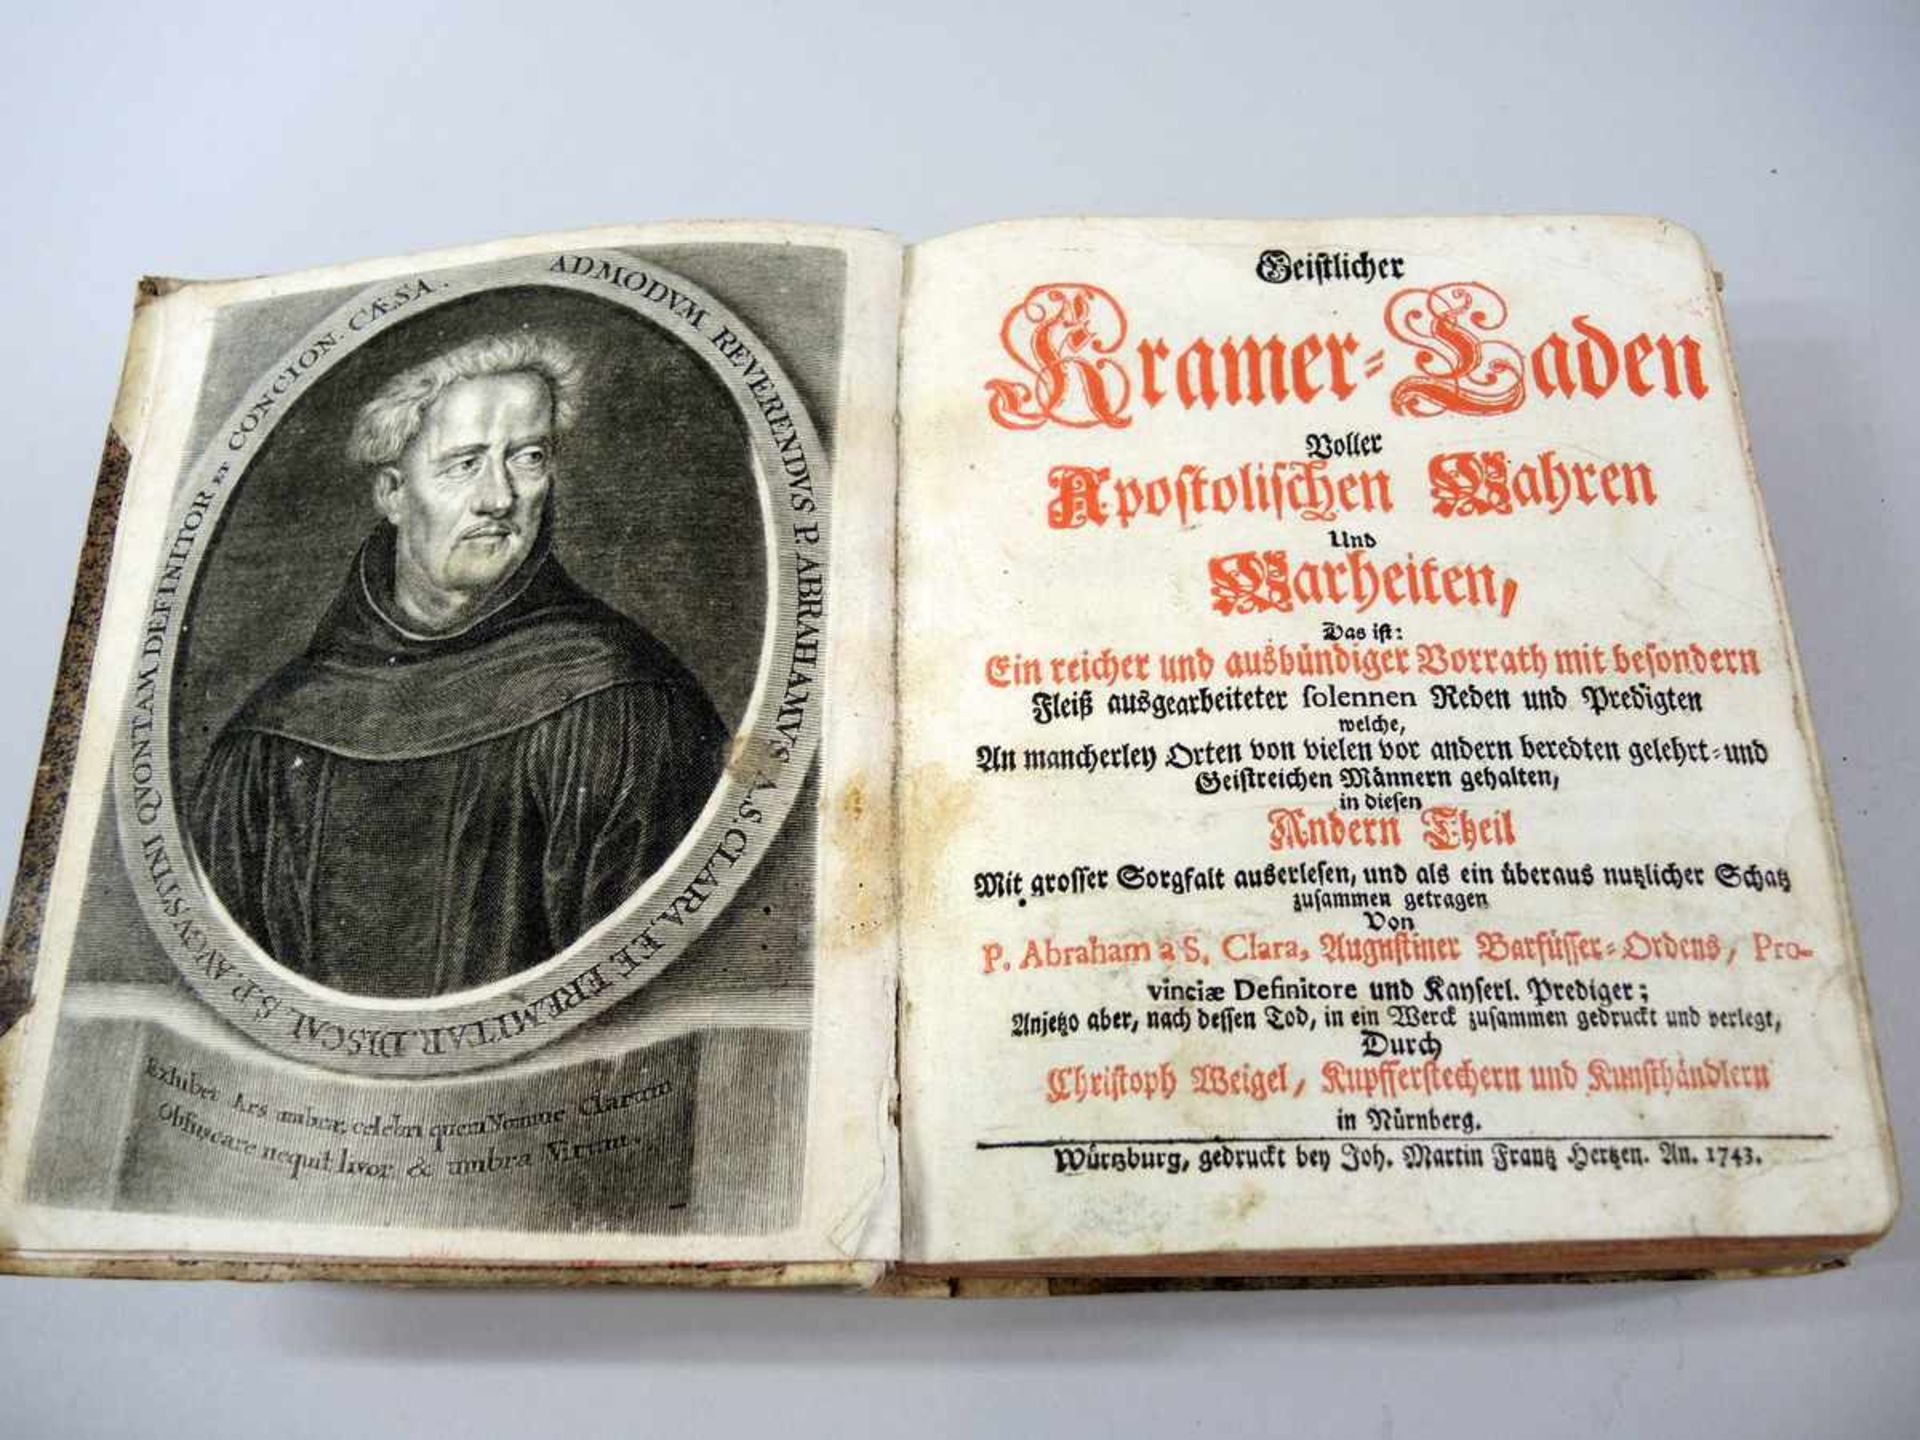 Abraham a Santa Clara,1644 Kreenheinstetten - 1709 Wien Geistlicher Kramer-Laden, voller